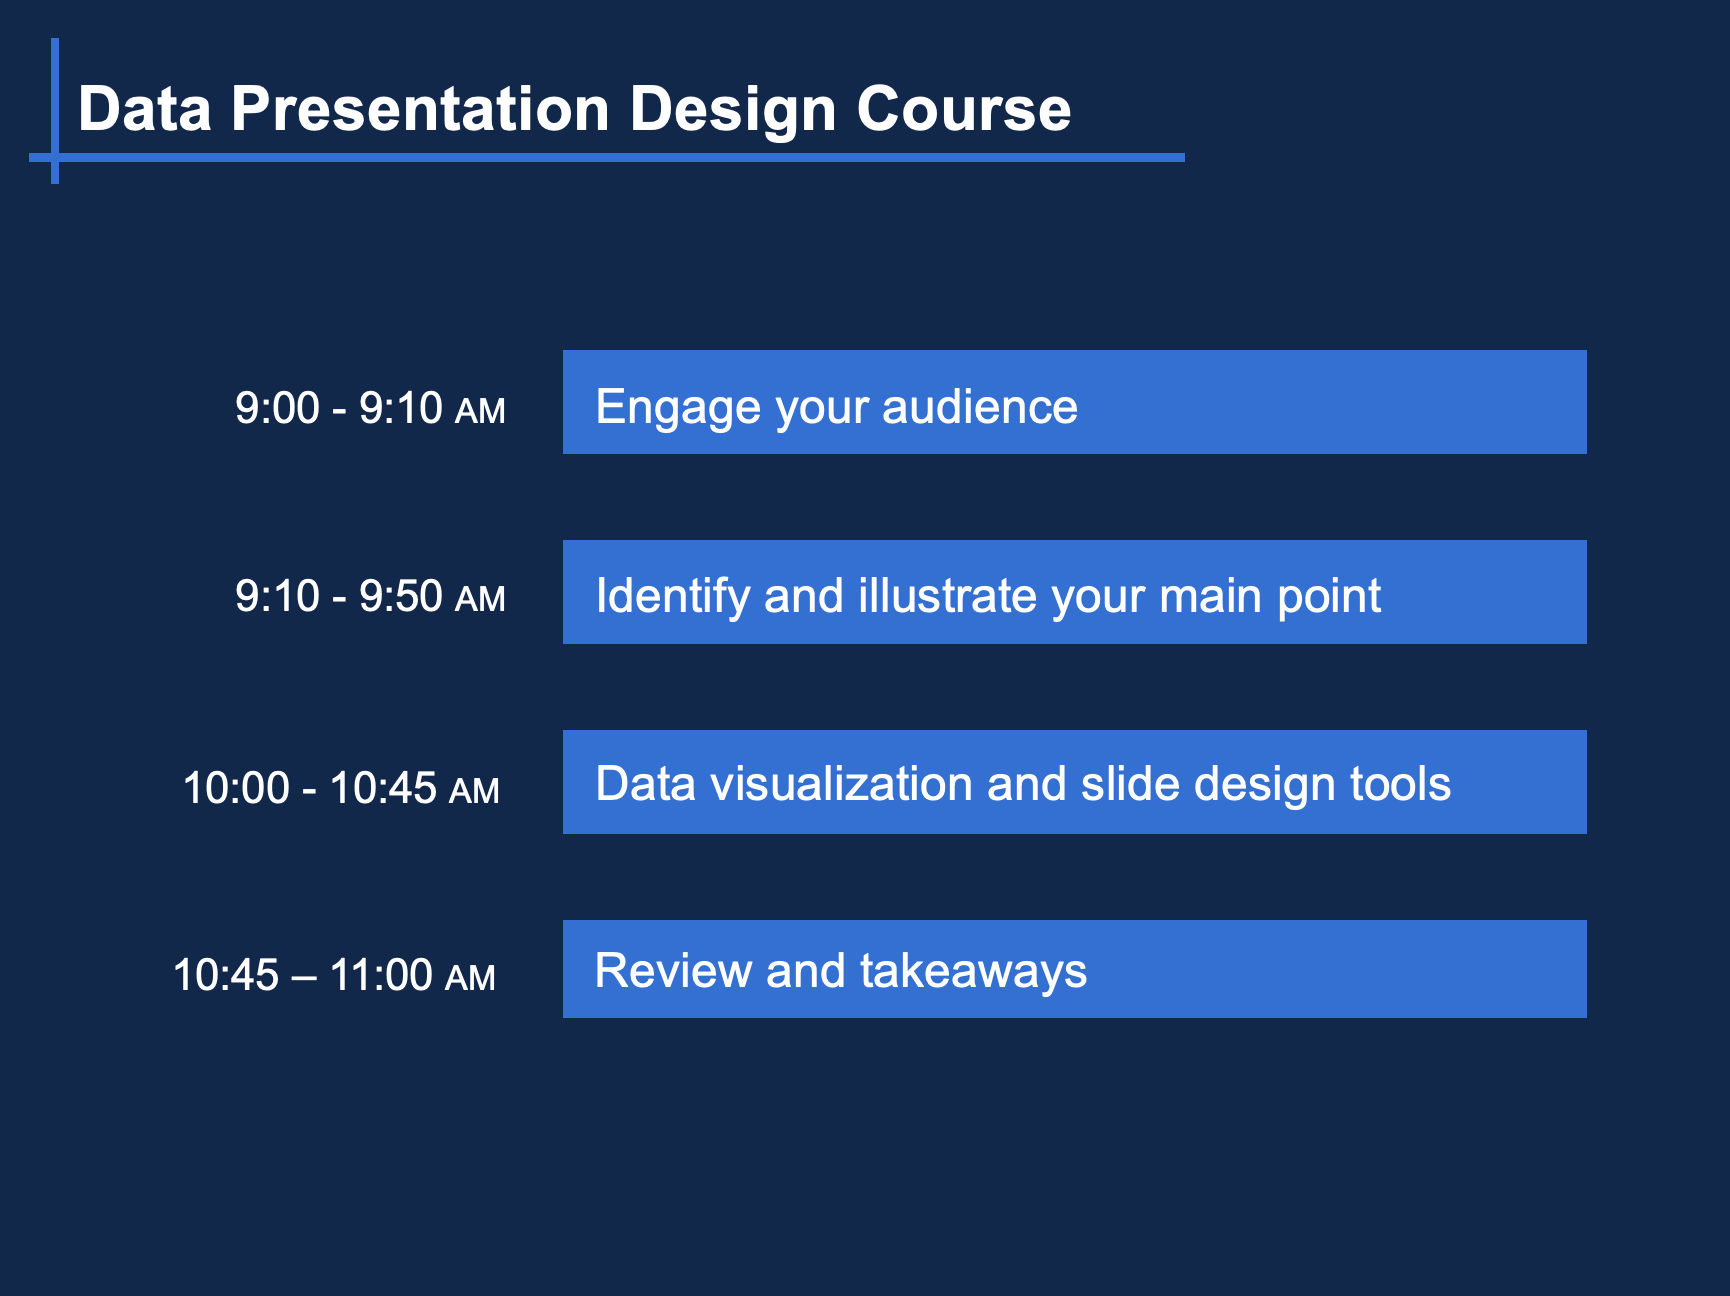 Data Presentation Design workshop outline